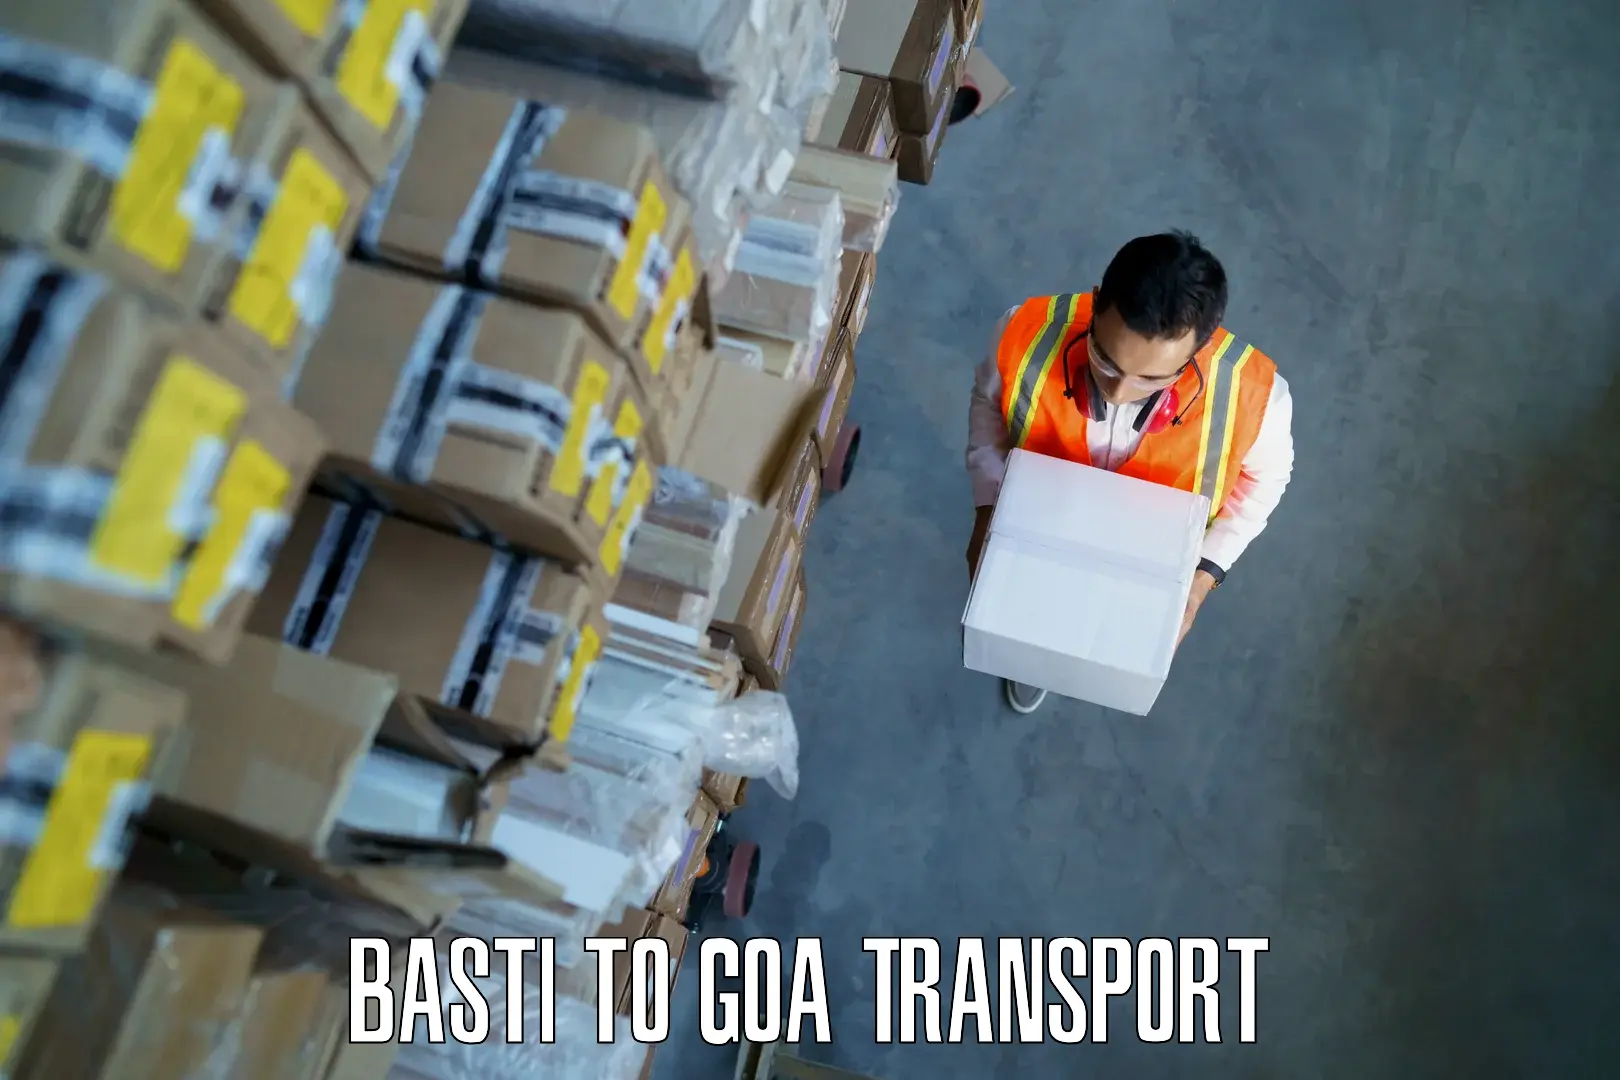 Furniture transport service Basti to Mormugao Port